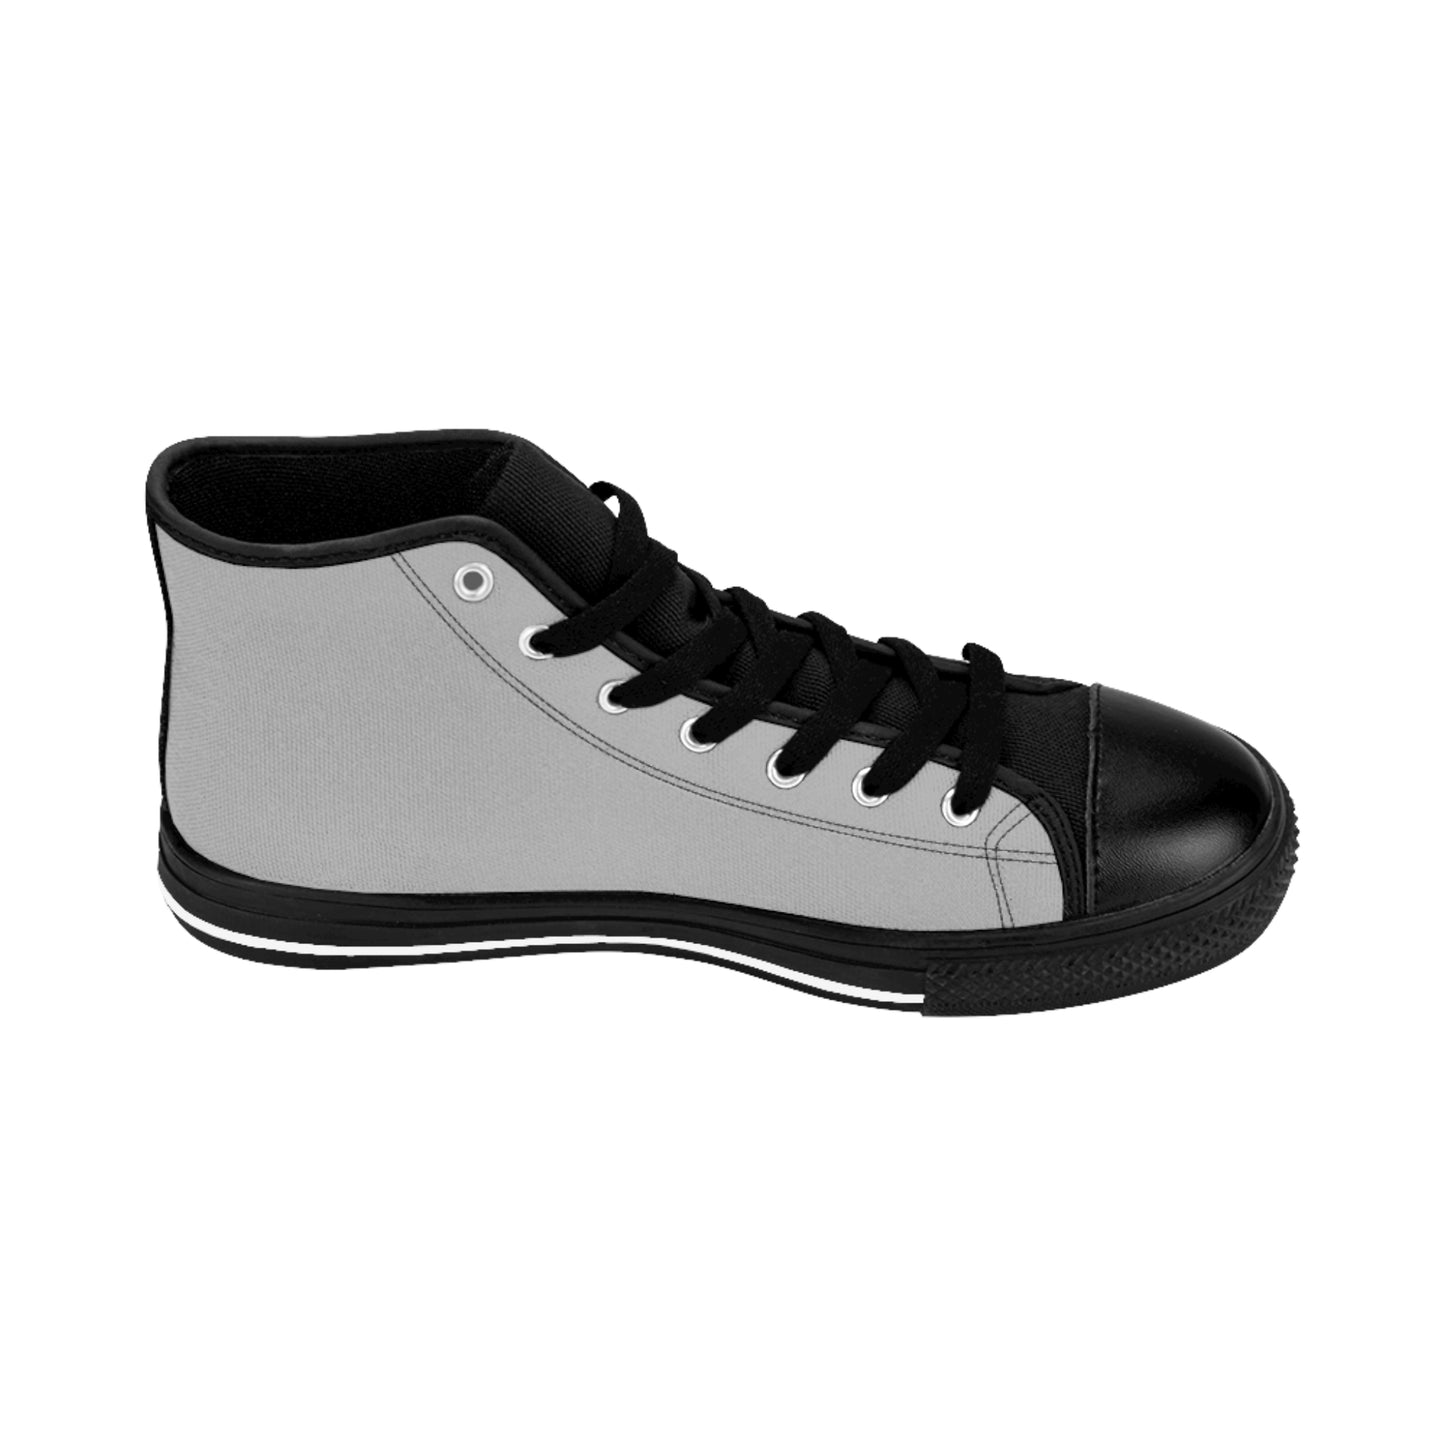 Friends - High-top Shoes (Light Grey)